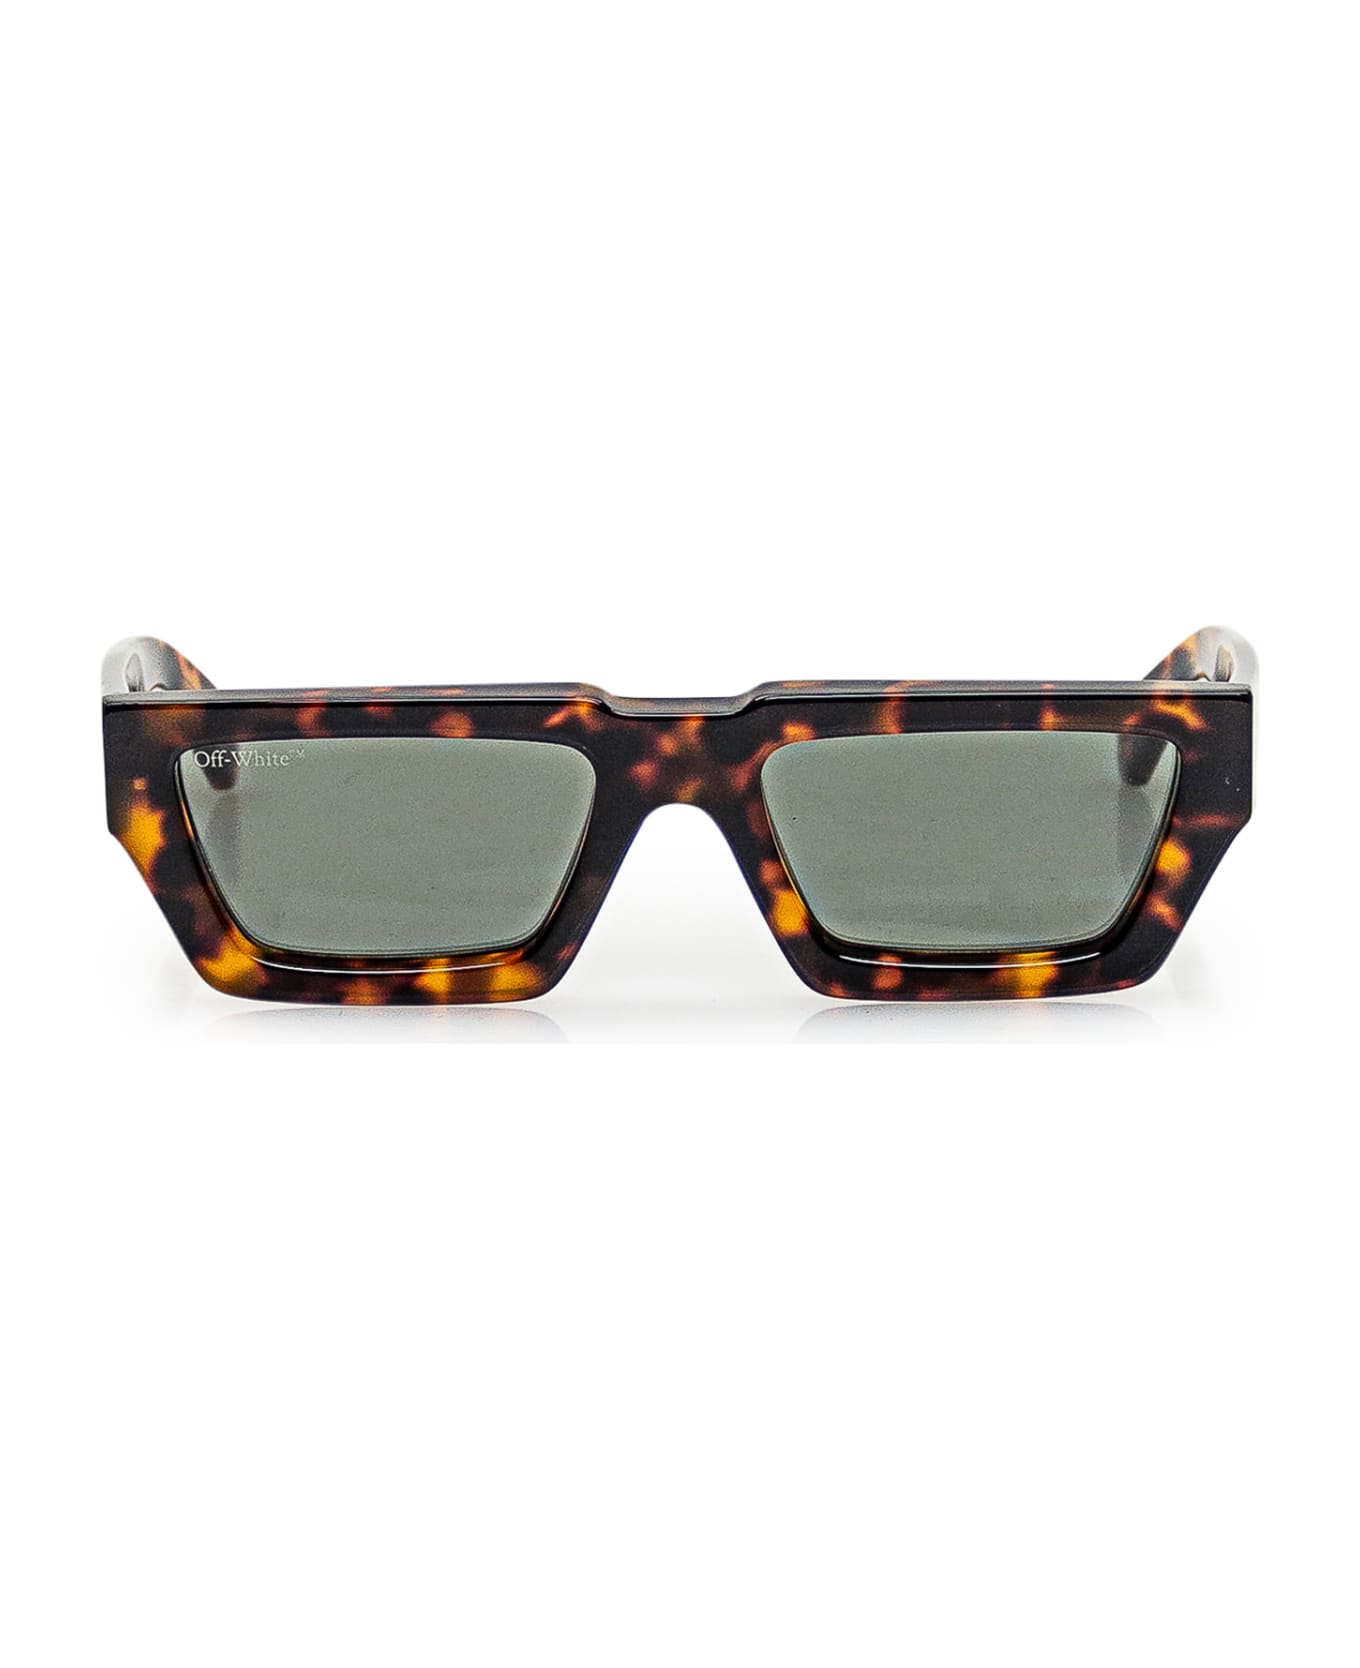 Off-White Manchester Rectangle Frame Sunglasses - 6055 HAVANA サングラス